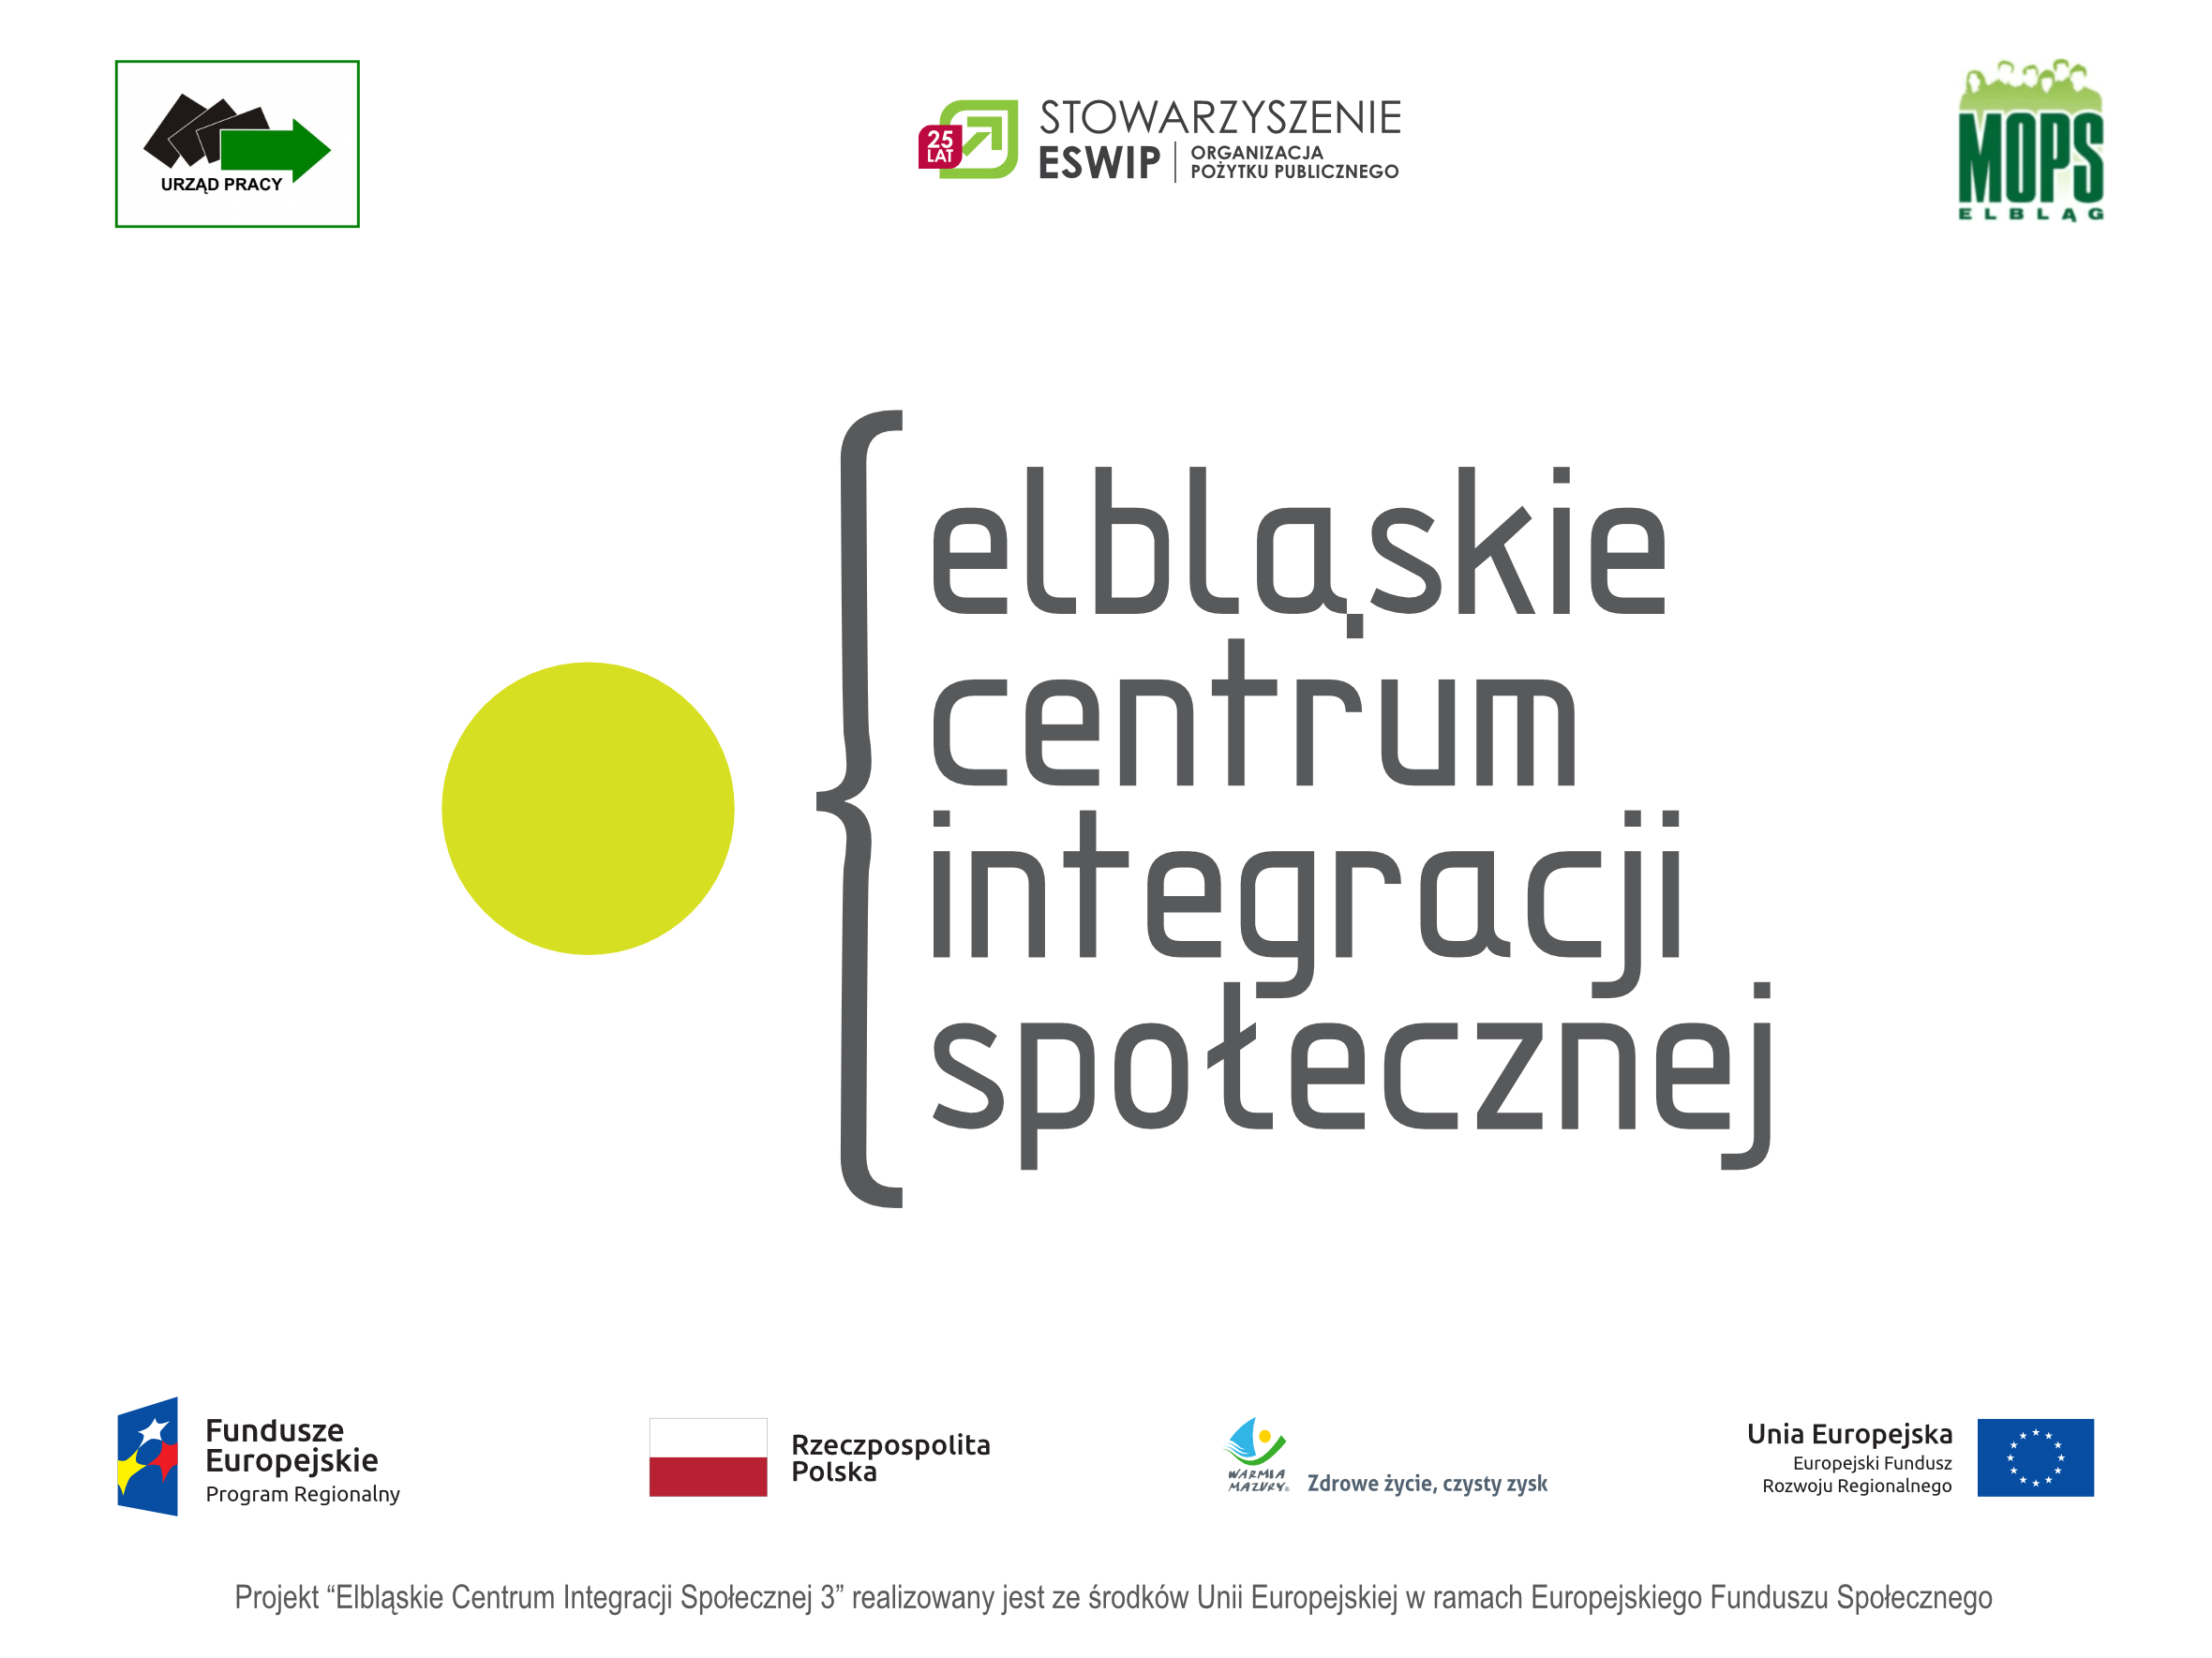 Elbląskie Centrum Integracji Społecznej 3 (2020-2023)